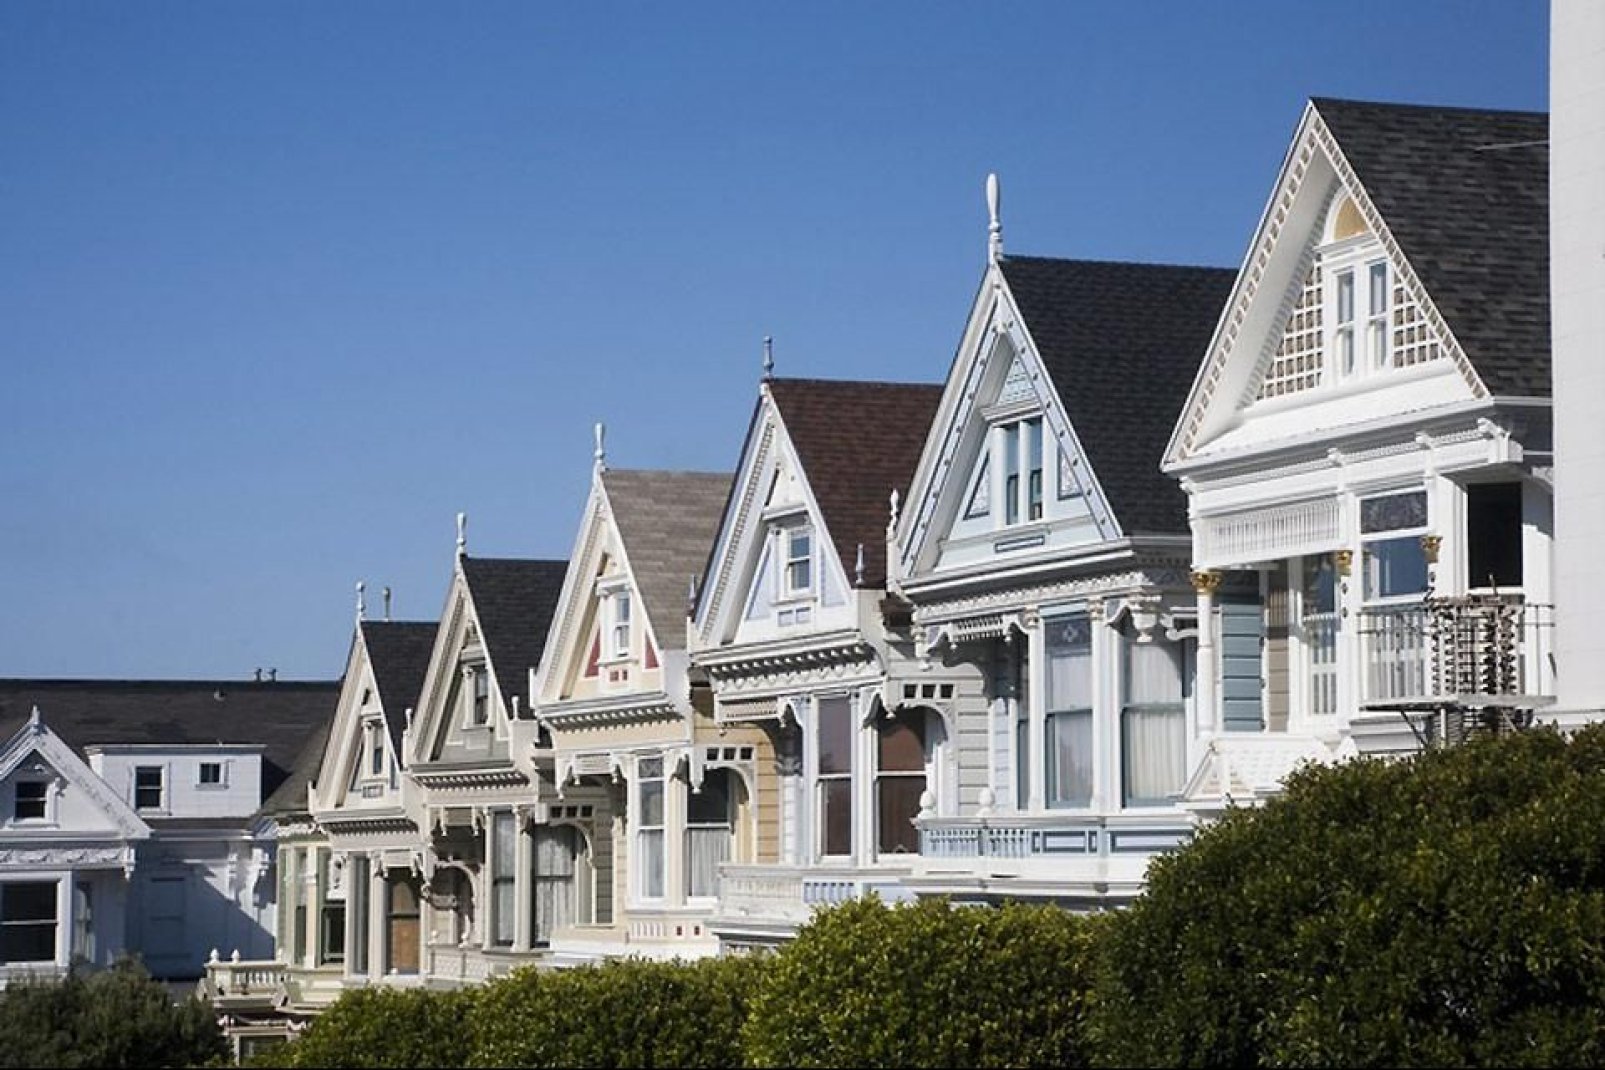 Costruita su colline, le case a schiera e colorate (soprannominate "Painted Ladies") sono caratteristiche della città californiana.